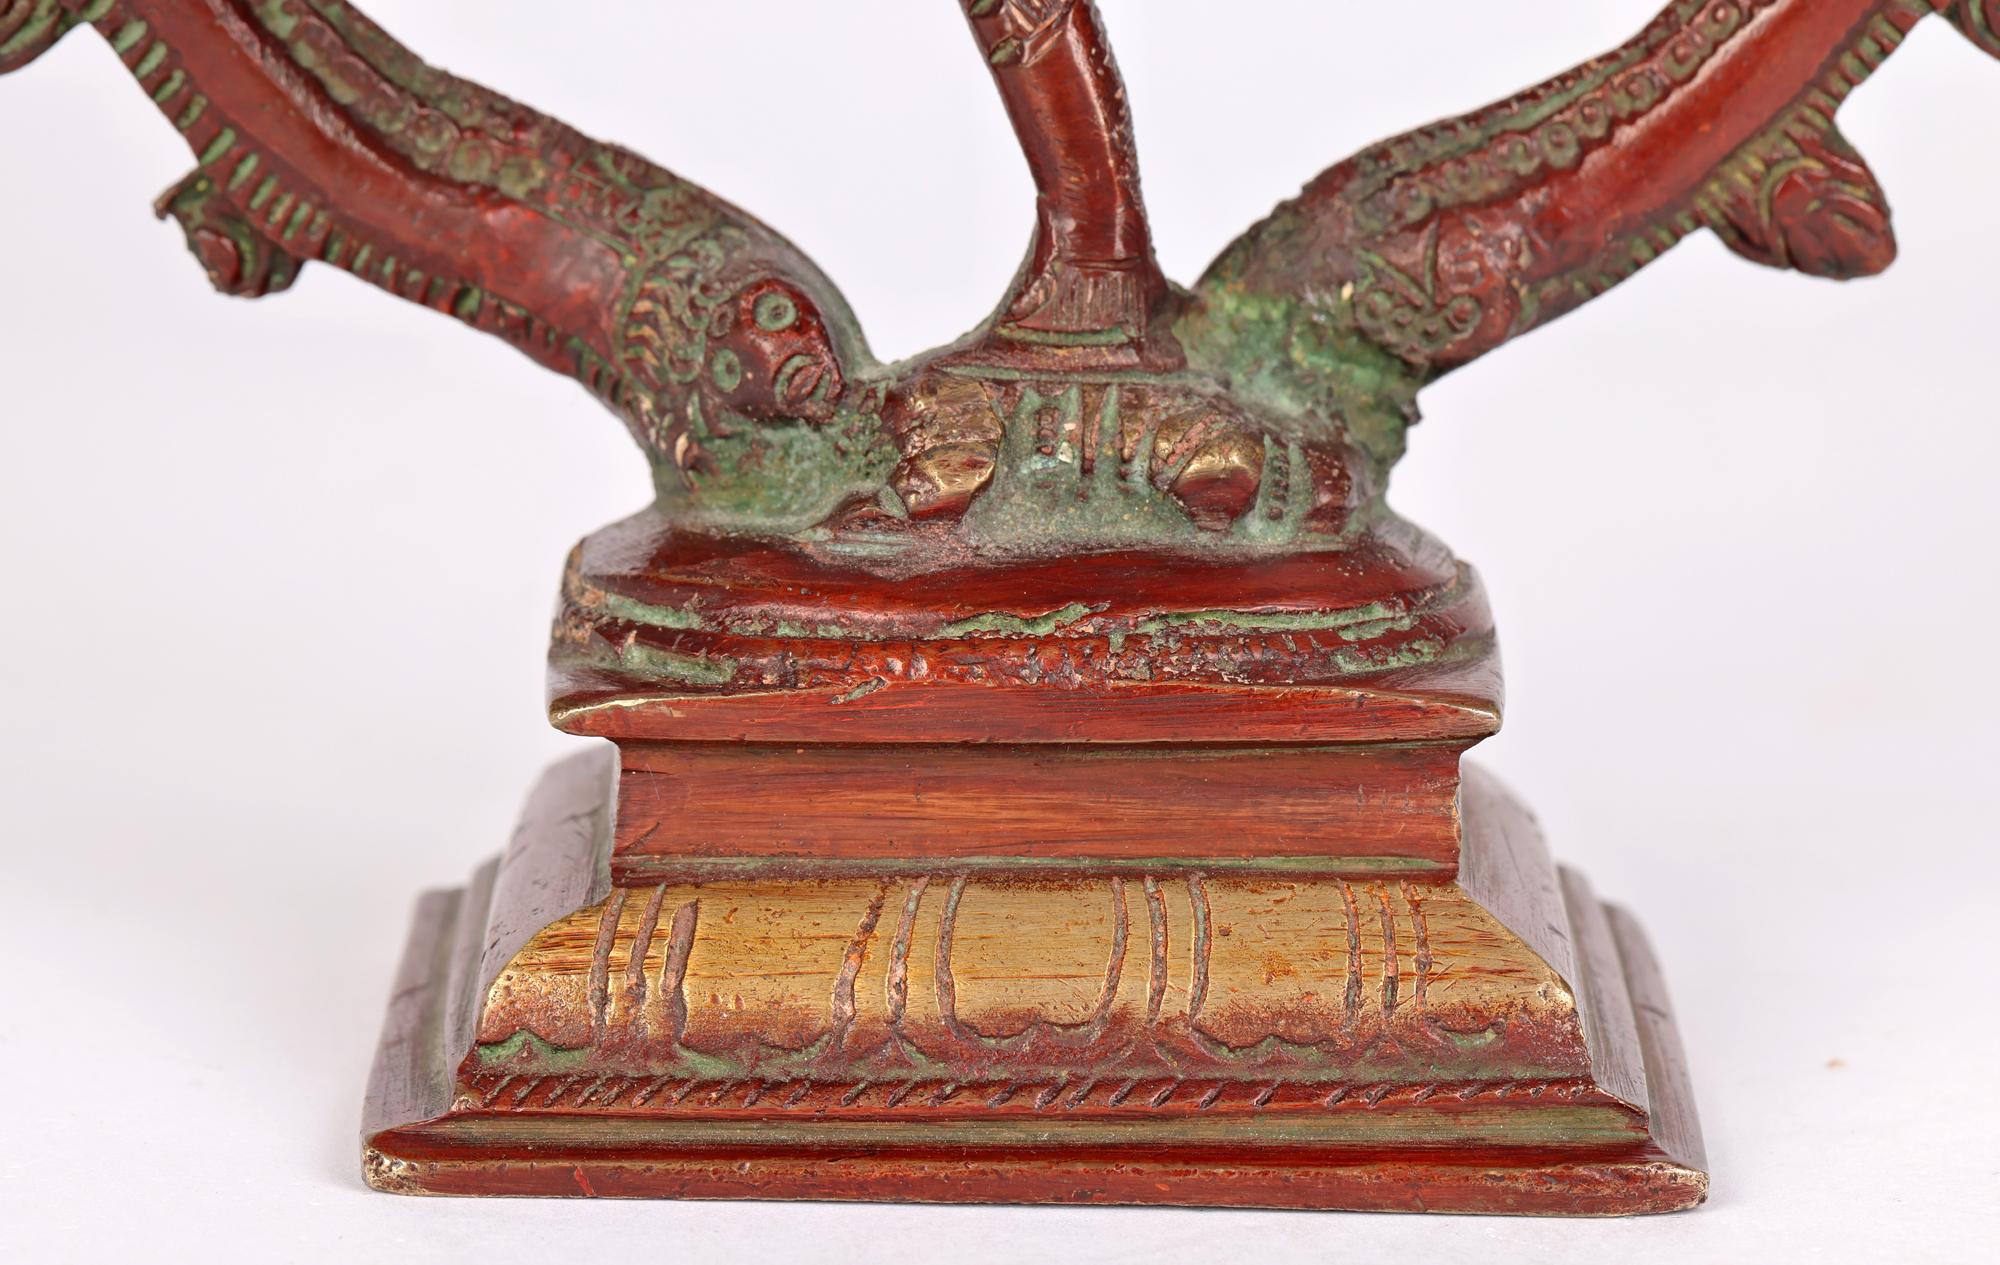 Une belle et inhabituelle statue indienne vintage en bronze laqué rouge de Shiva Nataraja datant du 20ème siècle. La figure représente le dieu hindou Shiva exécutant une danse. La figure est montée sur un socle rectangulaire et se tient debout sur